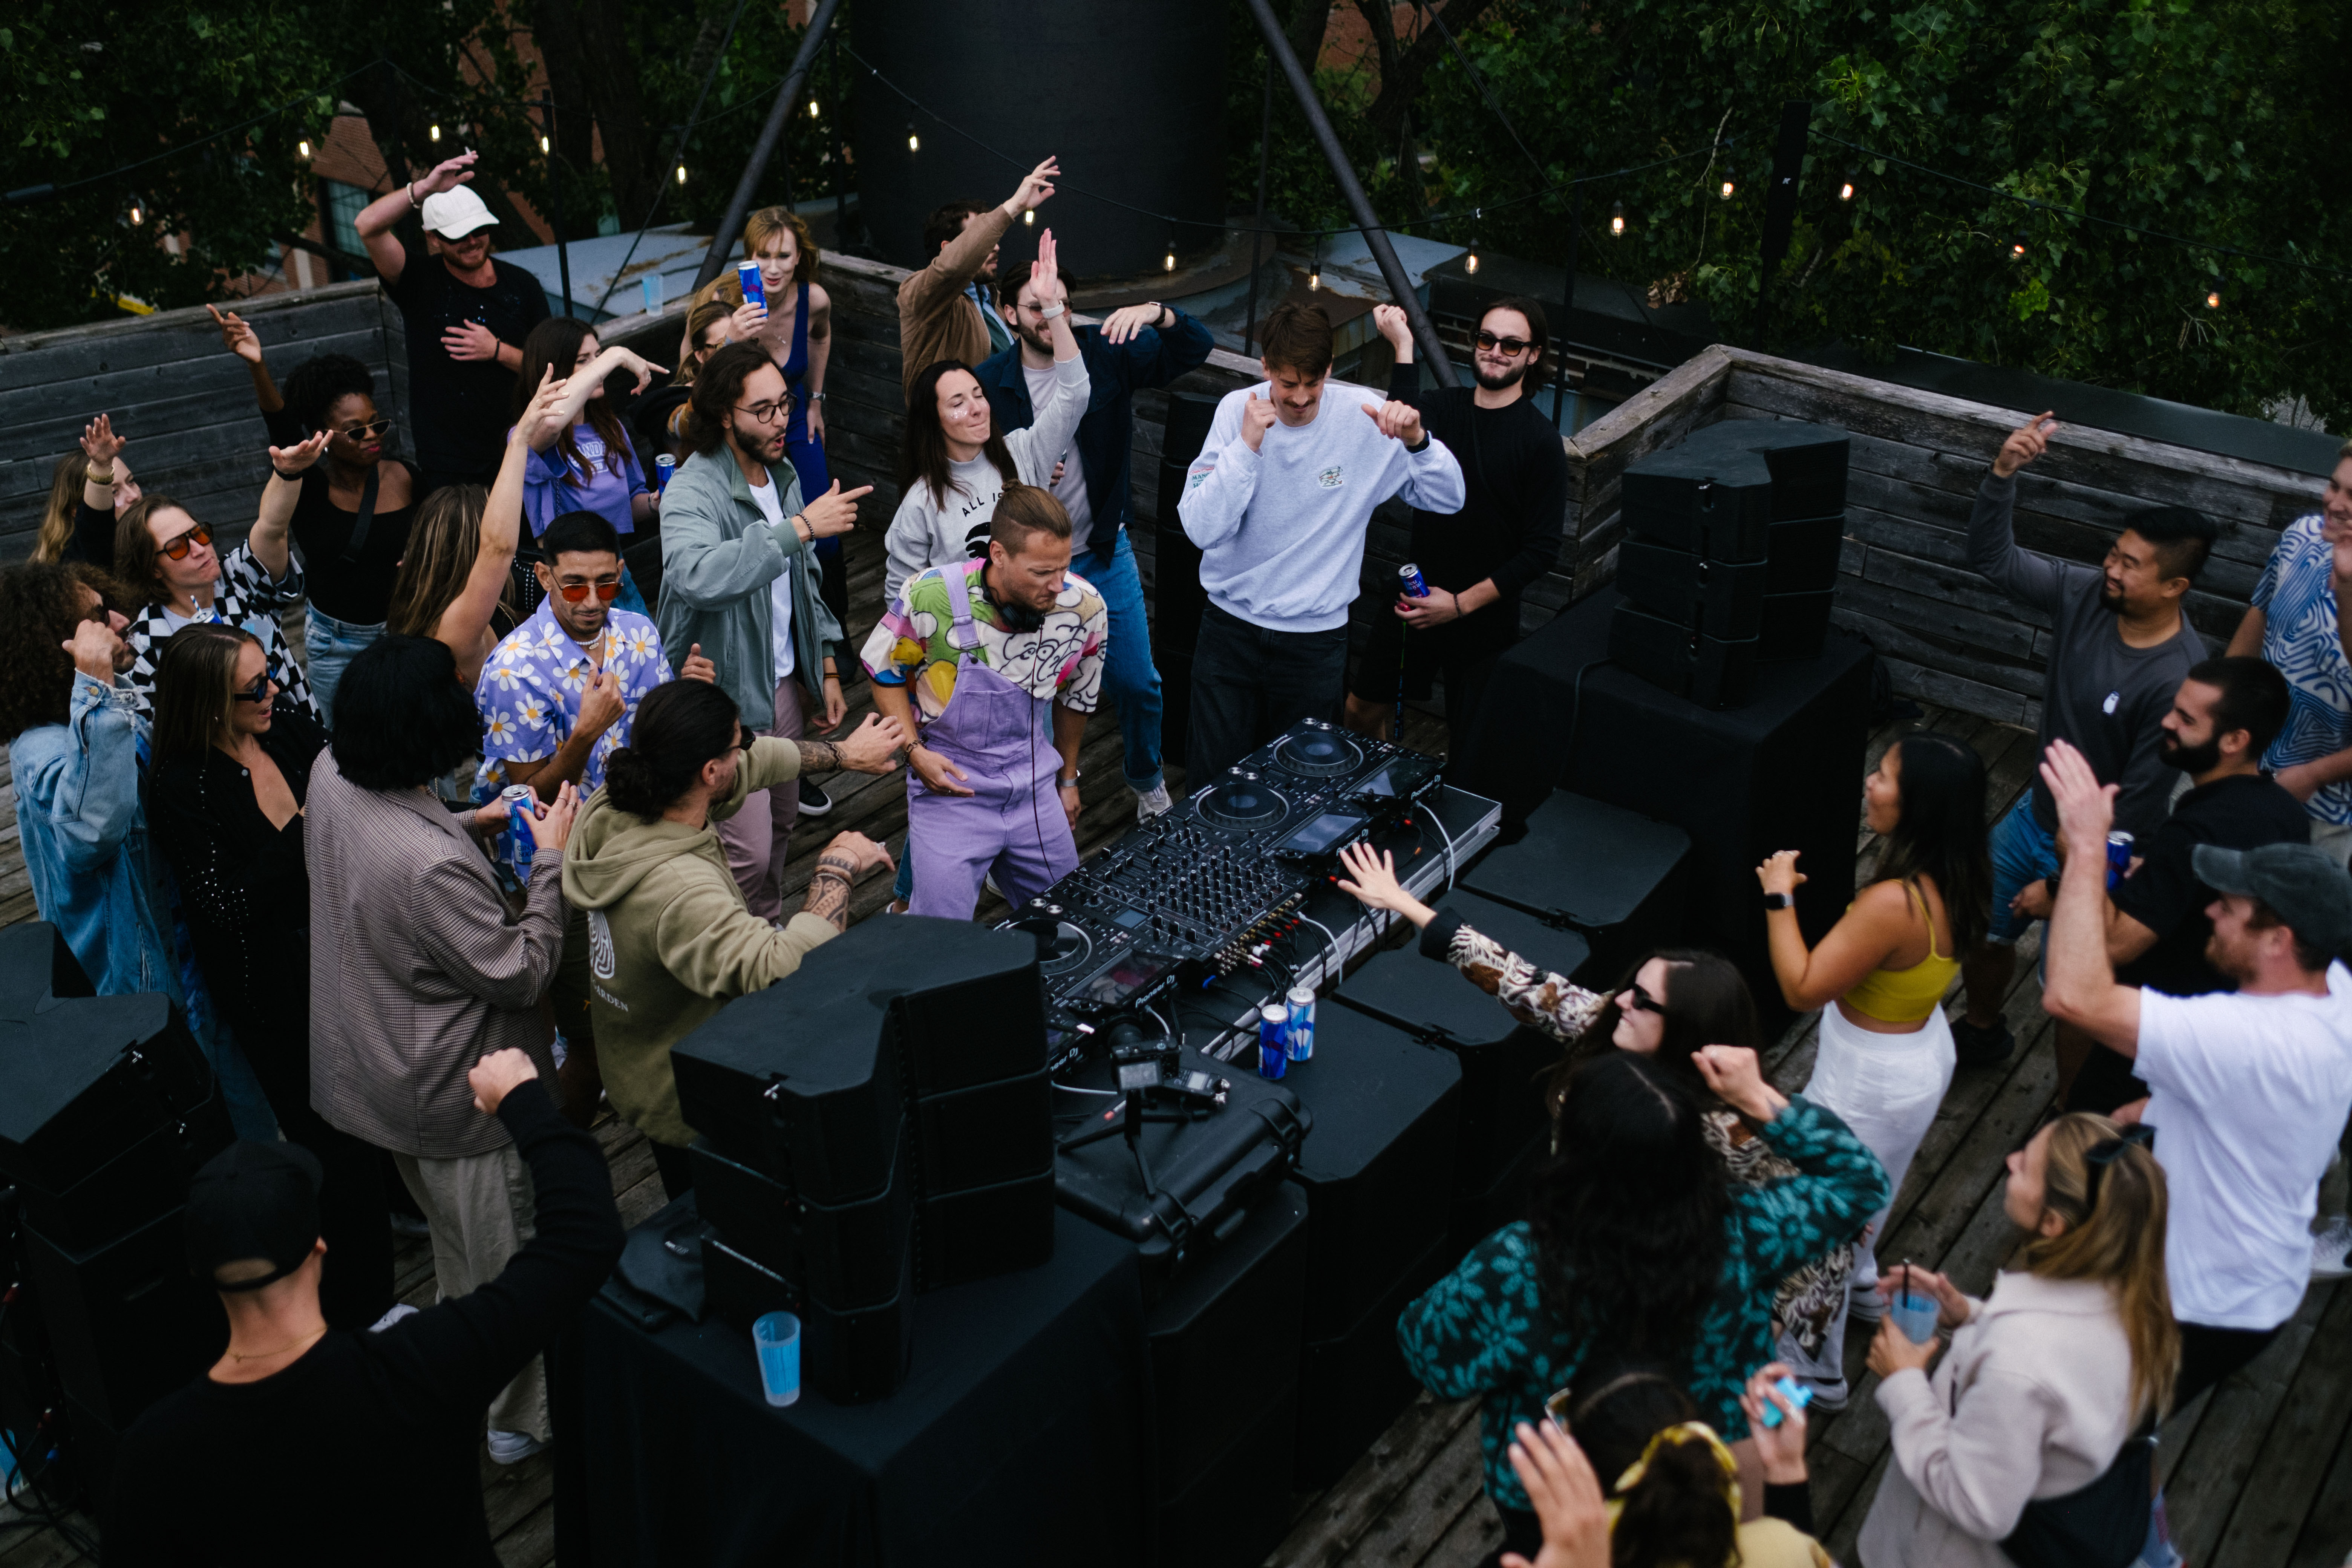 Un party sur une terrasse extérieure, avec un DJ booth et un DJ en pleine performance, entourés de danseurs et un équipement de sonorisation impressionnant avec tables tournantes, haut-parleurs, console...